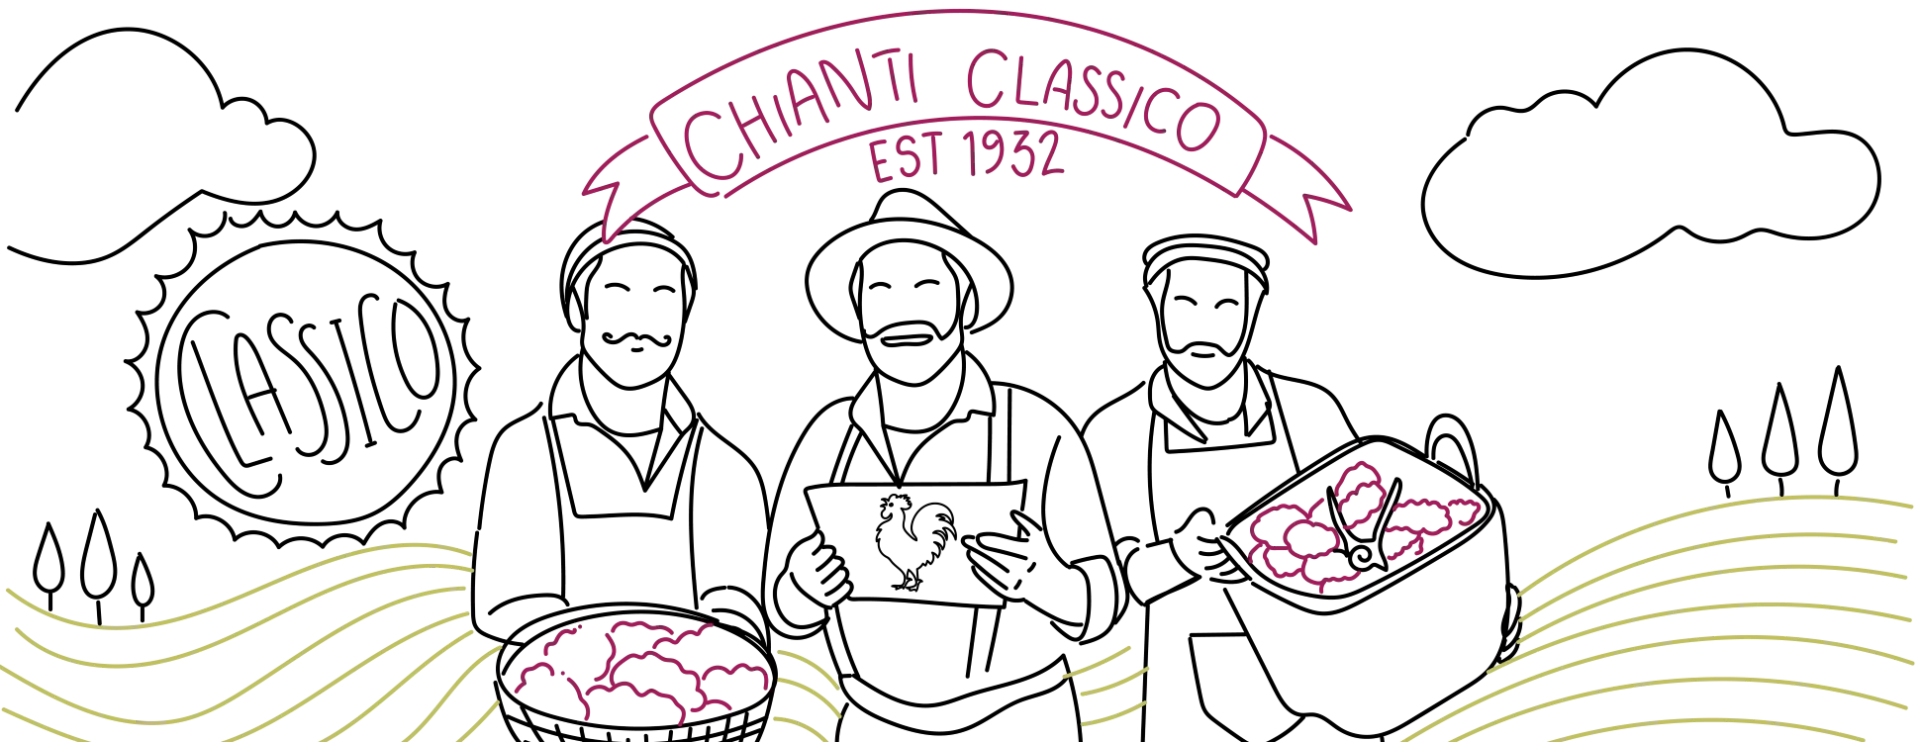 Chianti Classico Gallo Nero - With Love From Italy